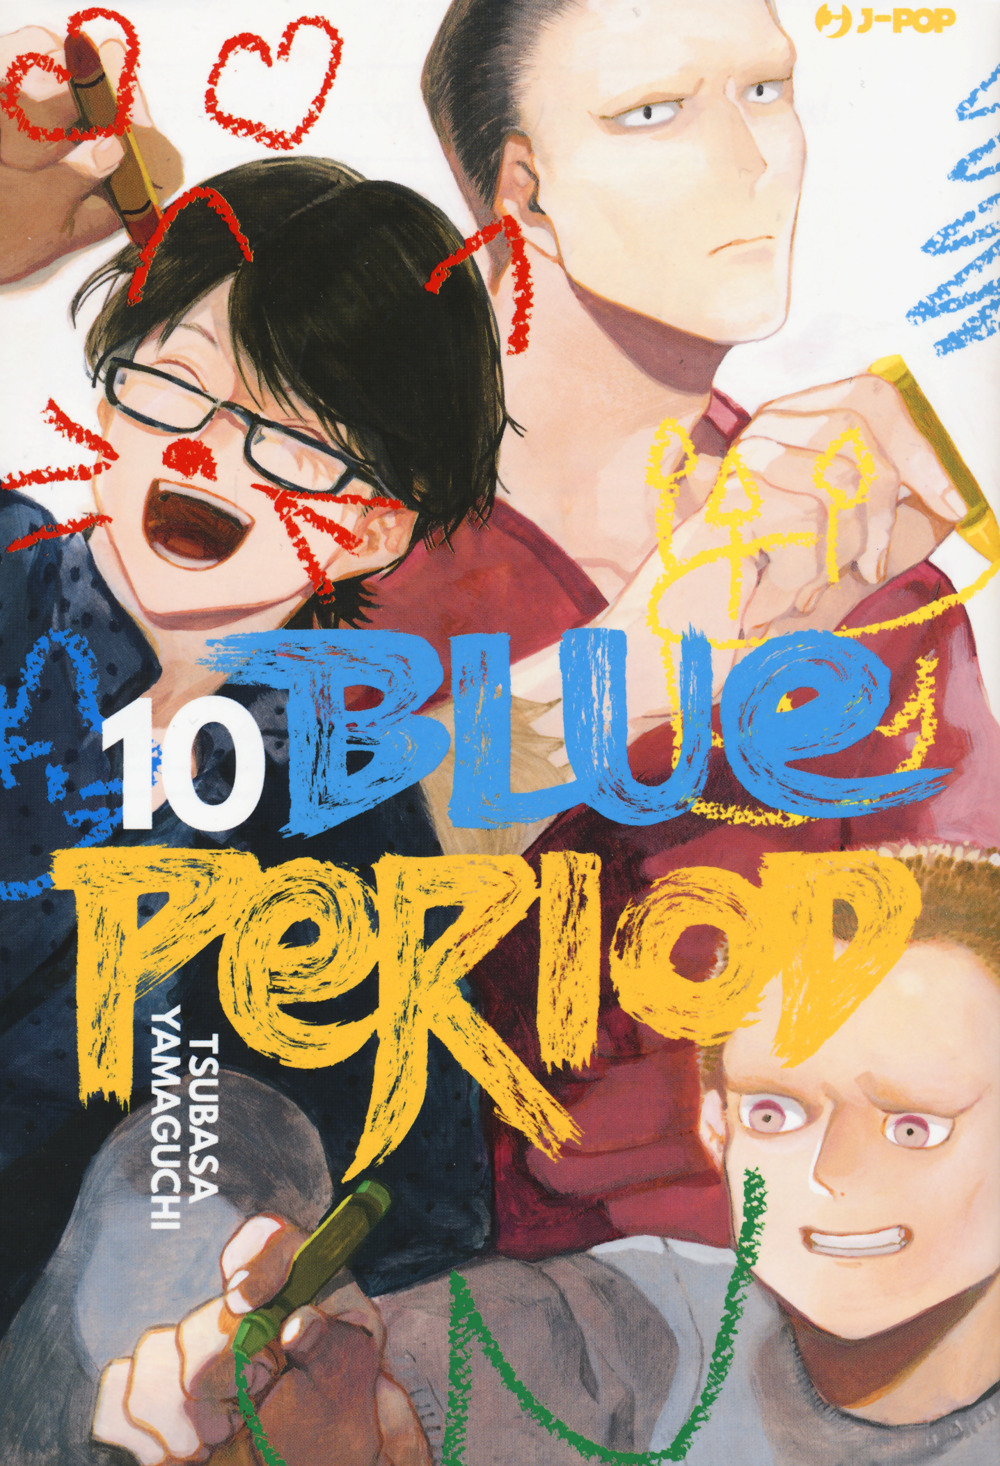 Blue period. Vol. 10